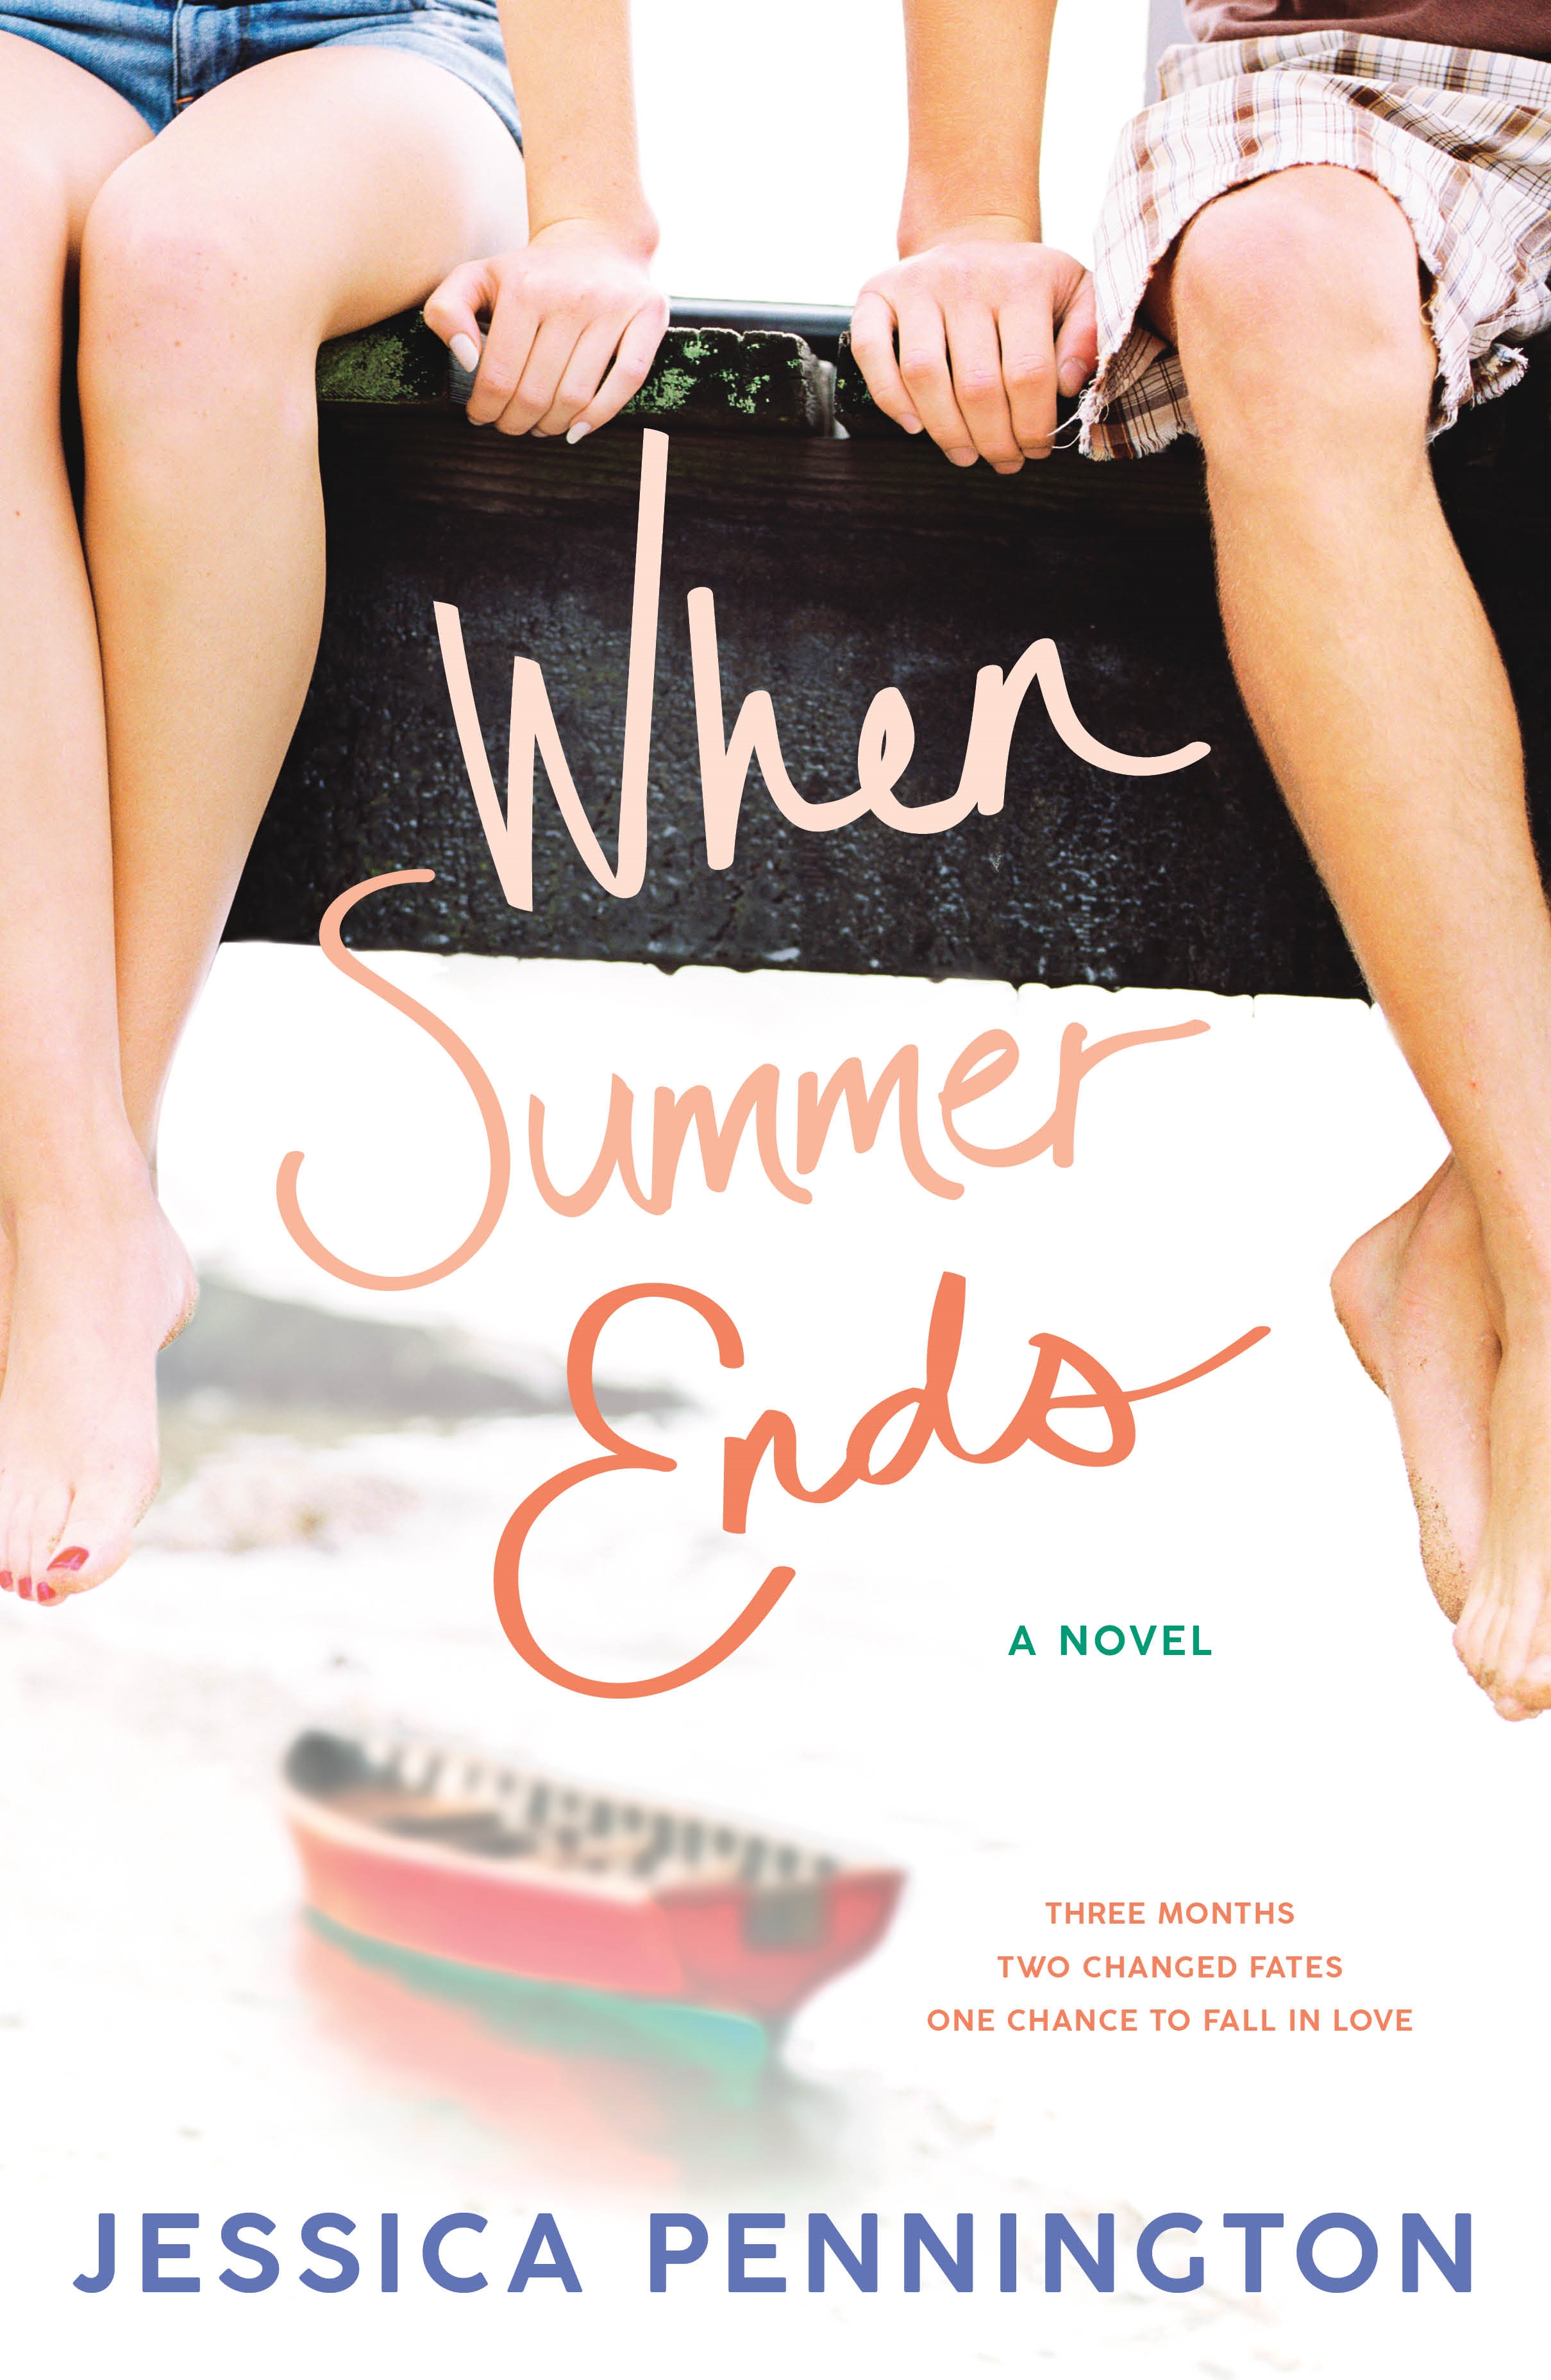 When Summer Ends : A Novel by Jessica Pennington